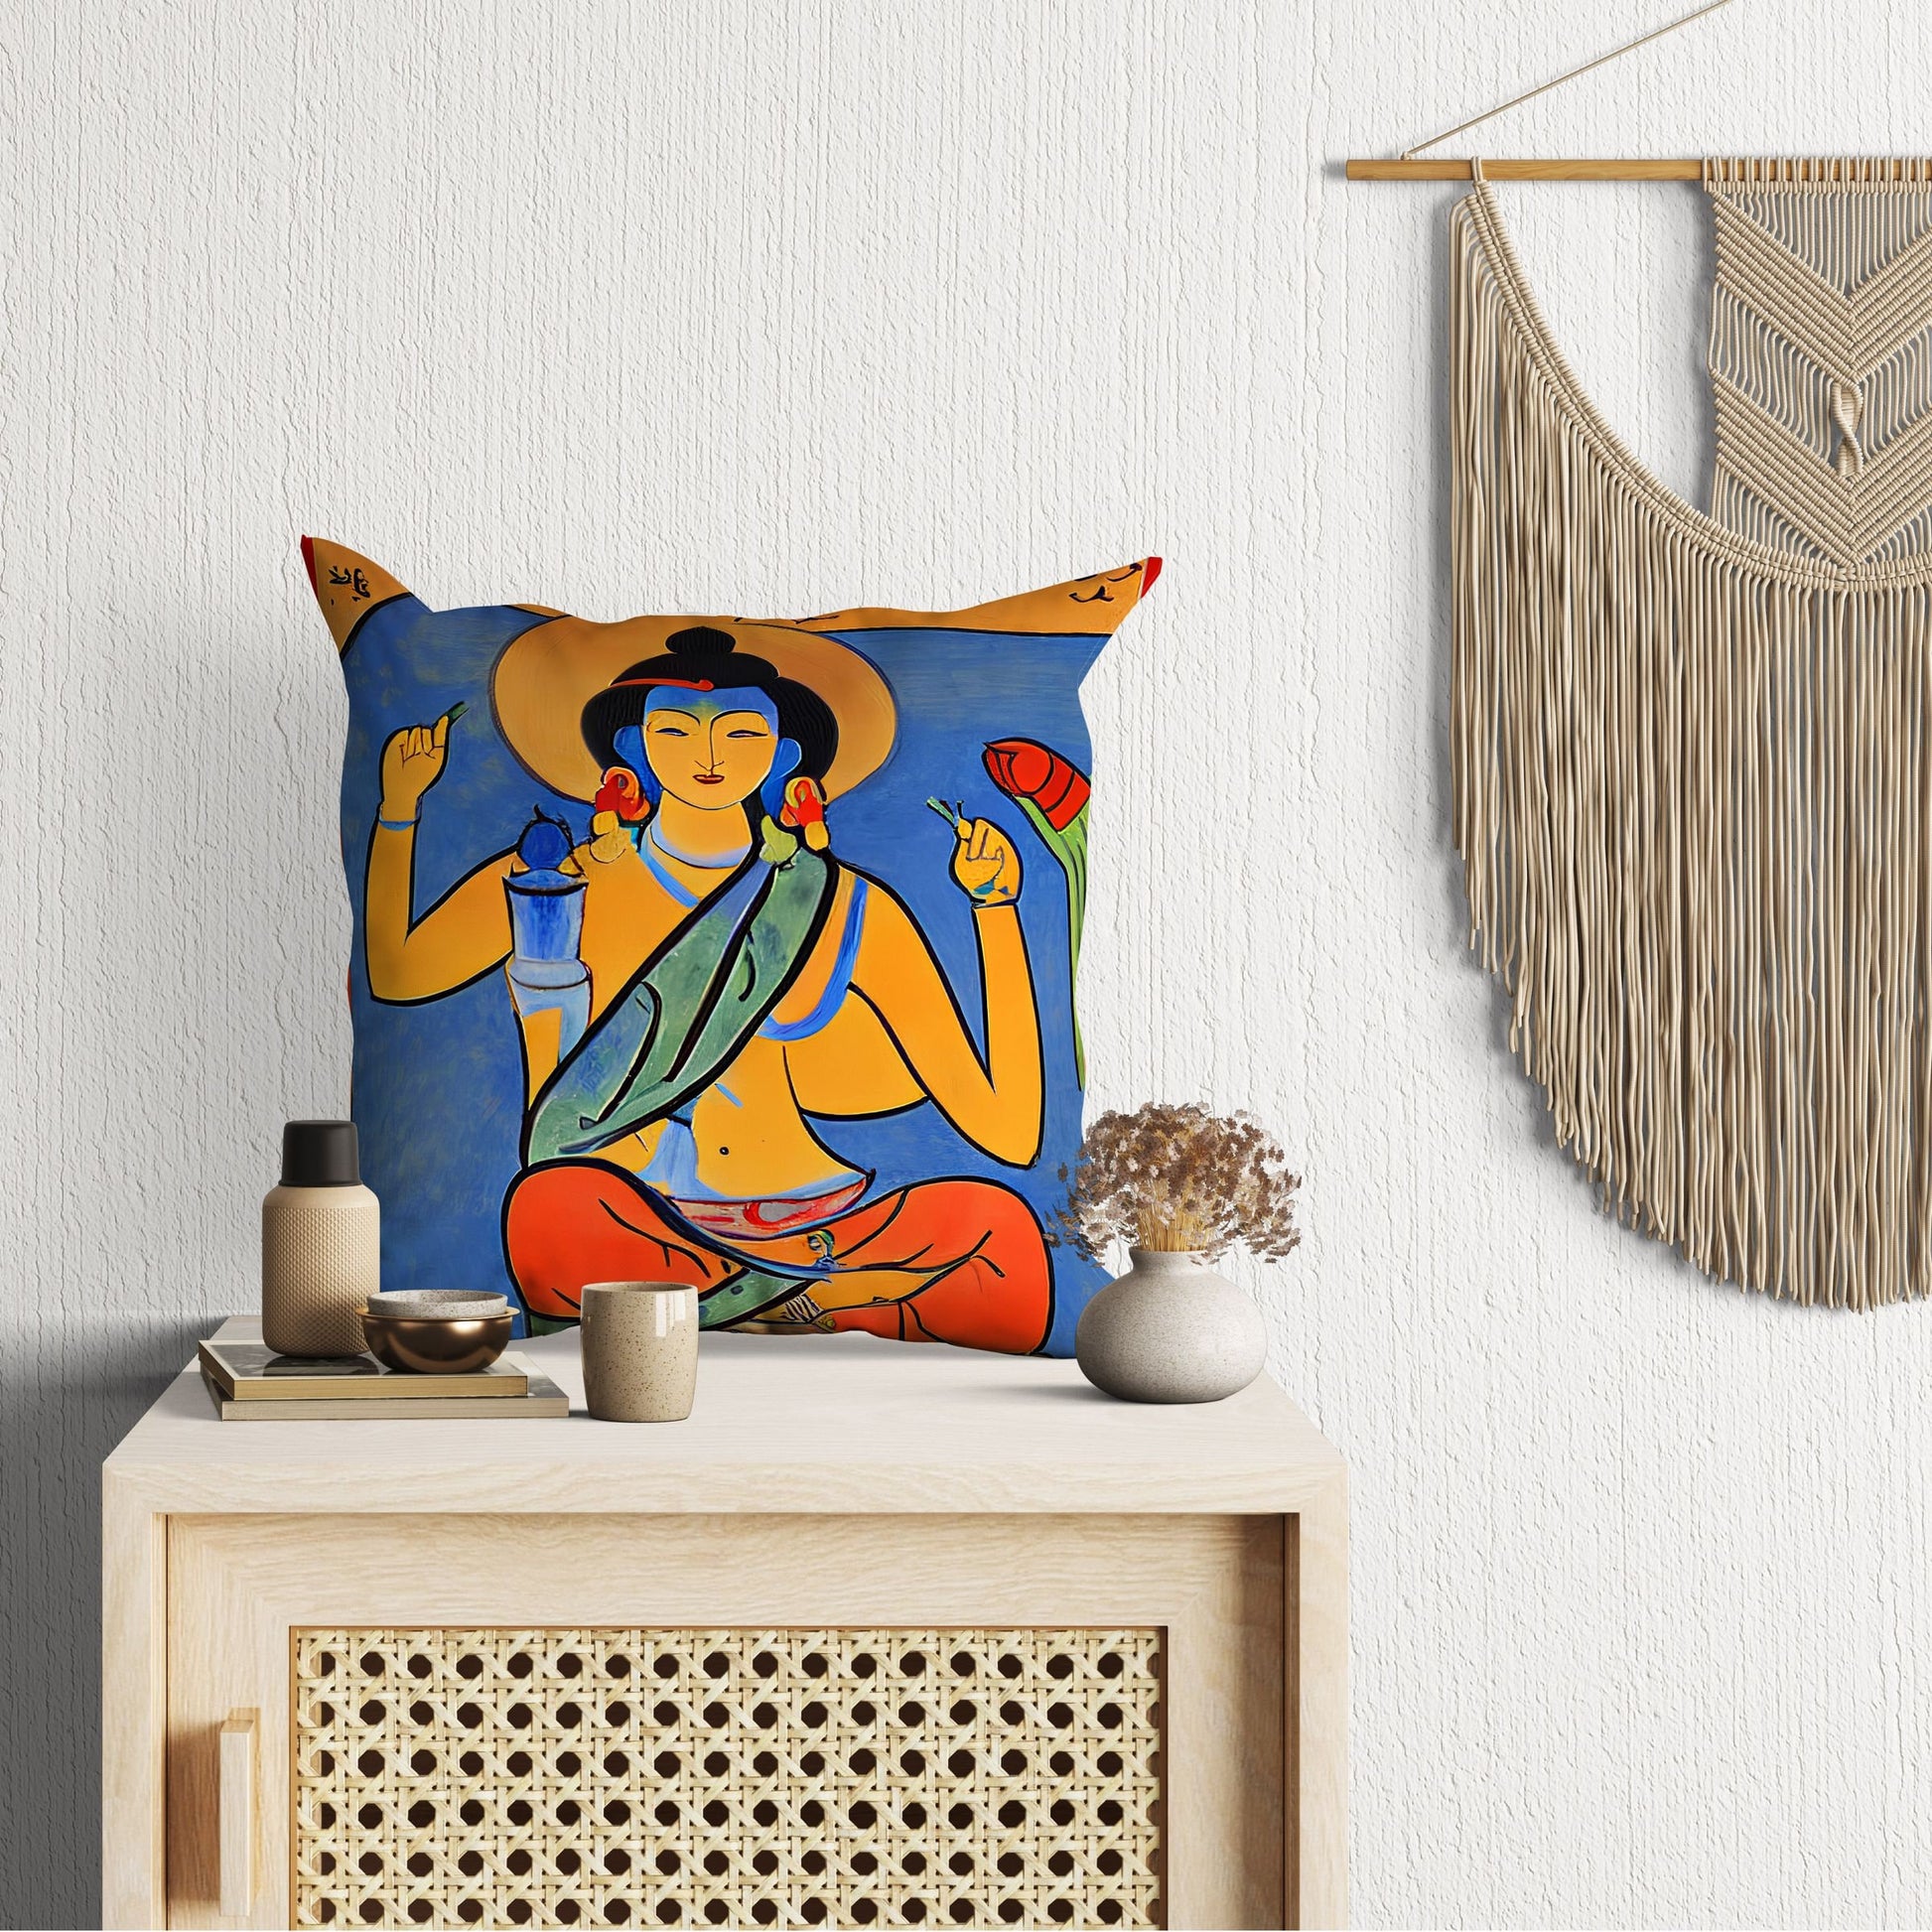 Buddhist Bodhisattva, Throw Pillow, Abstract Art Pillow, Designer Pillow, Colorful Pillow Case, Modern Pillow, 18 X 18 Pillow Covers